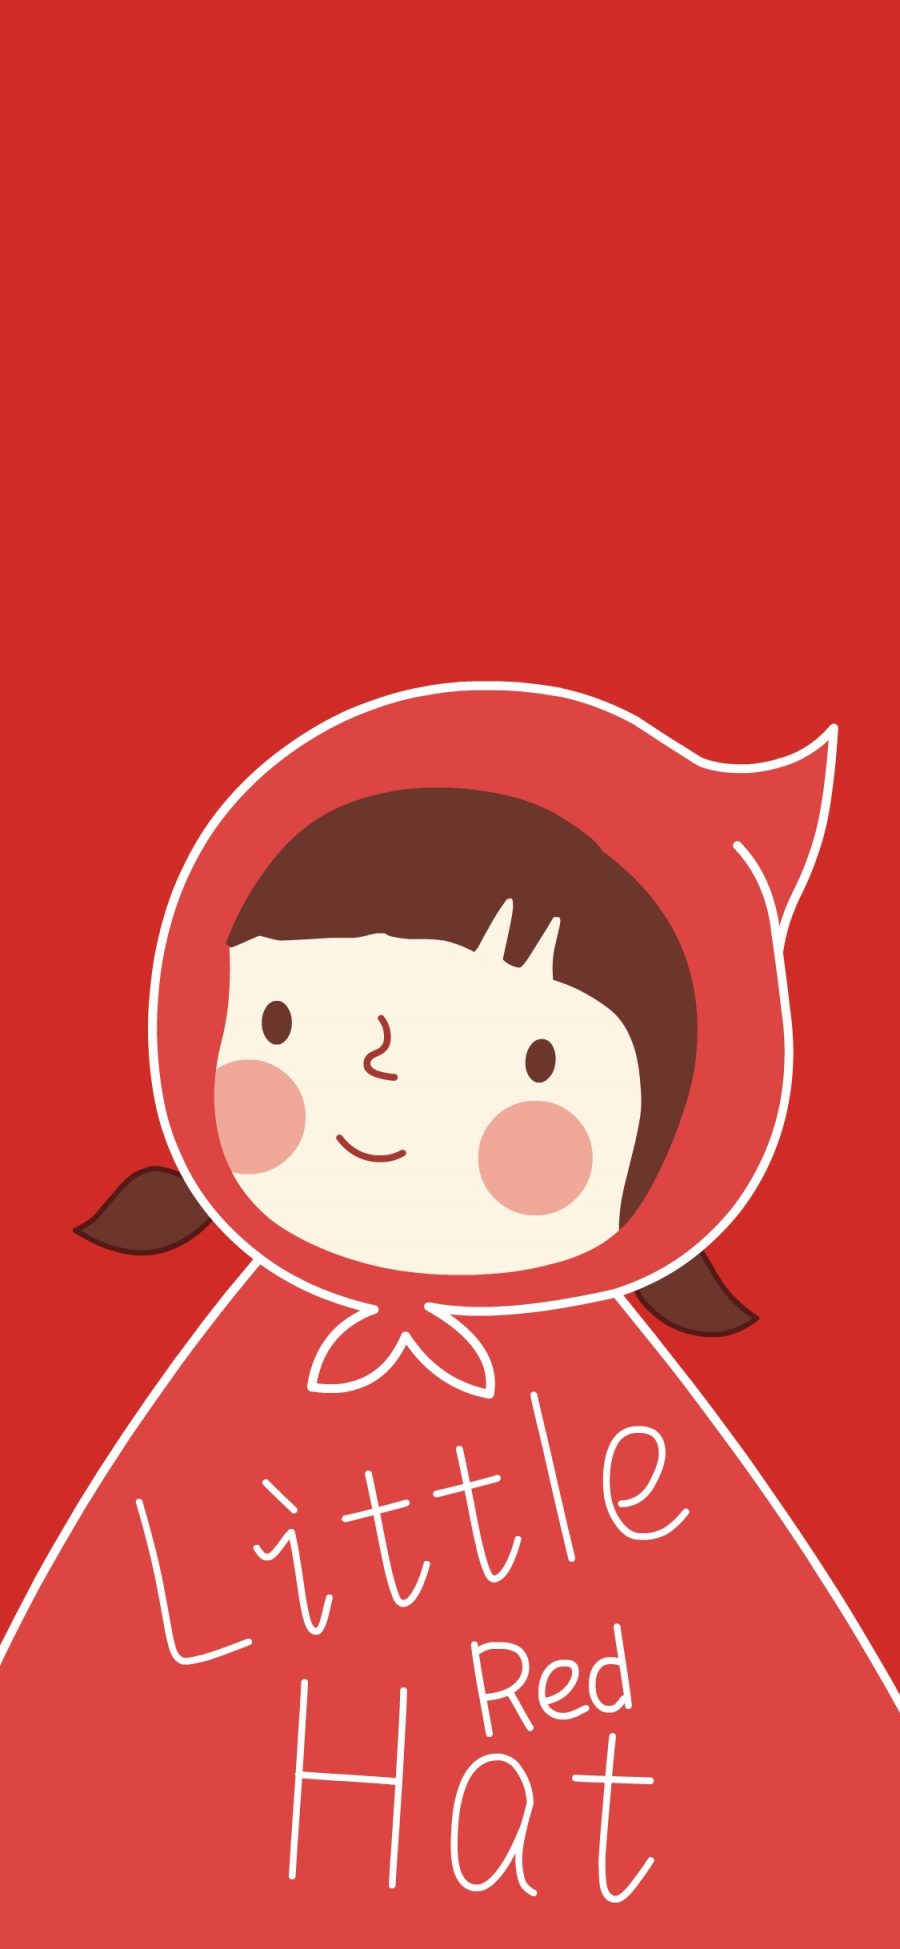 [2436×1125]小红帽 红色 卡通 可爱 苹果手机动漫壁纸图片